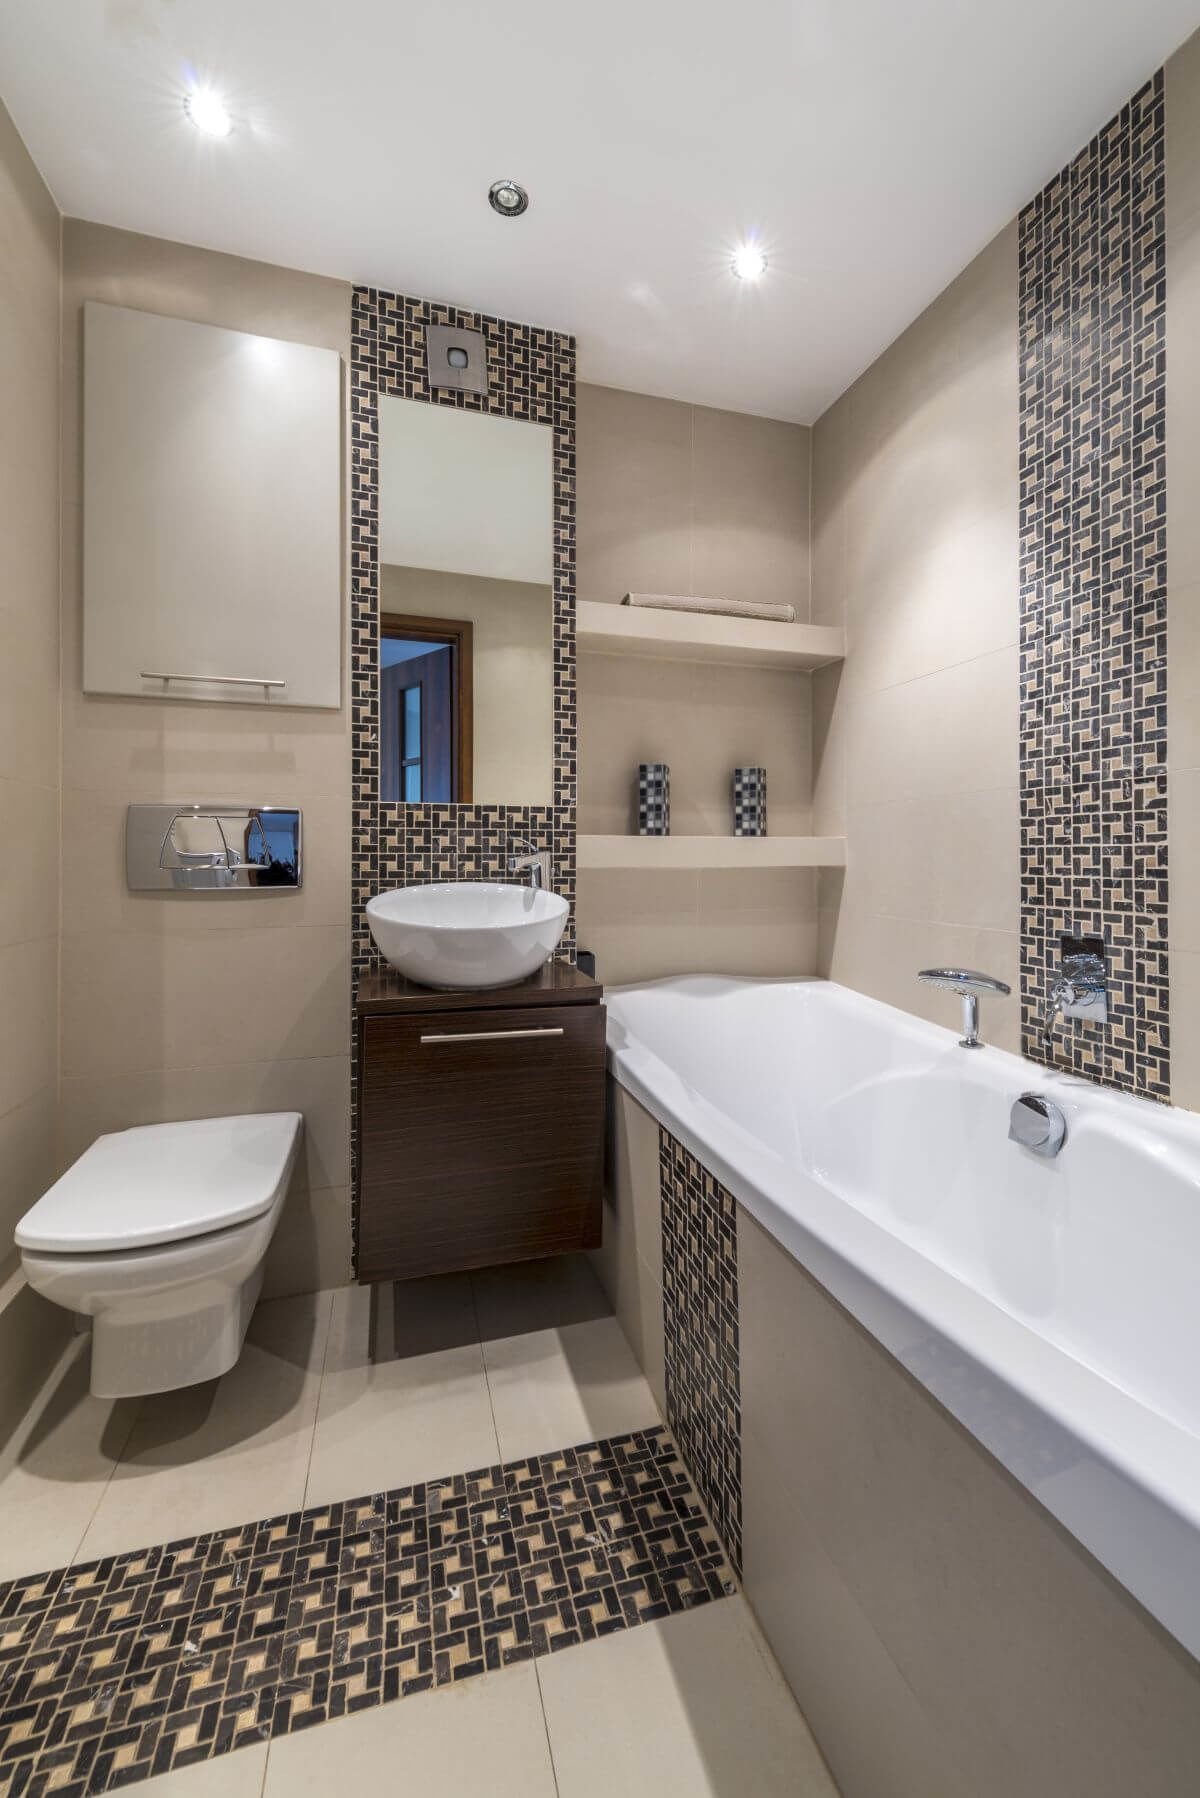 Mẫu nhà vệ sinh nhỏ đẹp được thiết kế màu sắc tối giản tinh tế